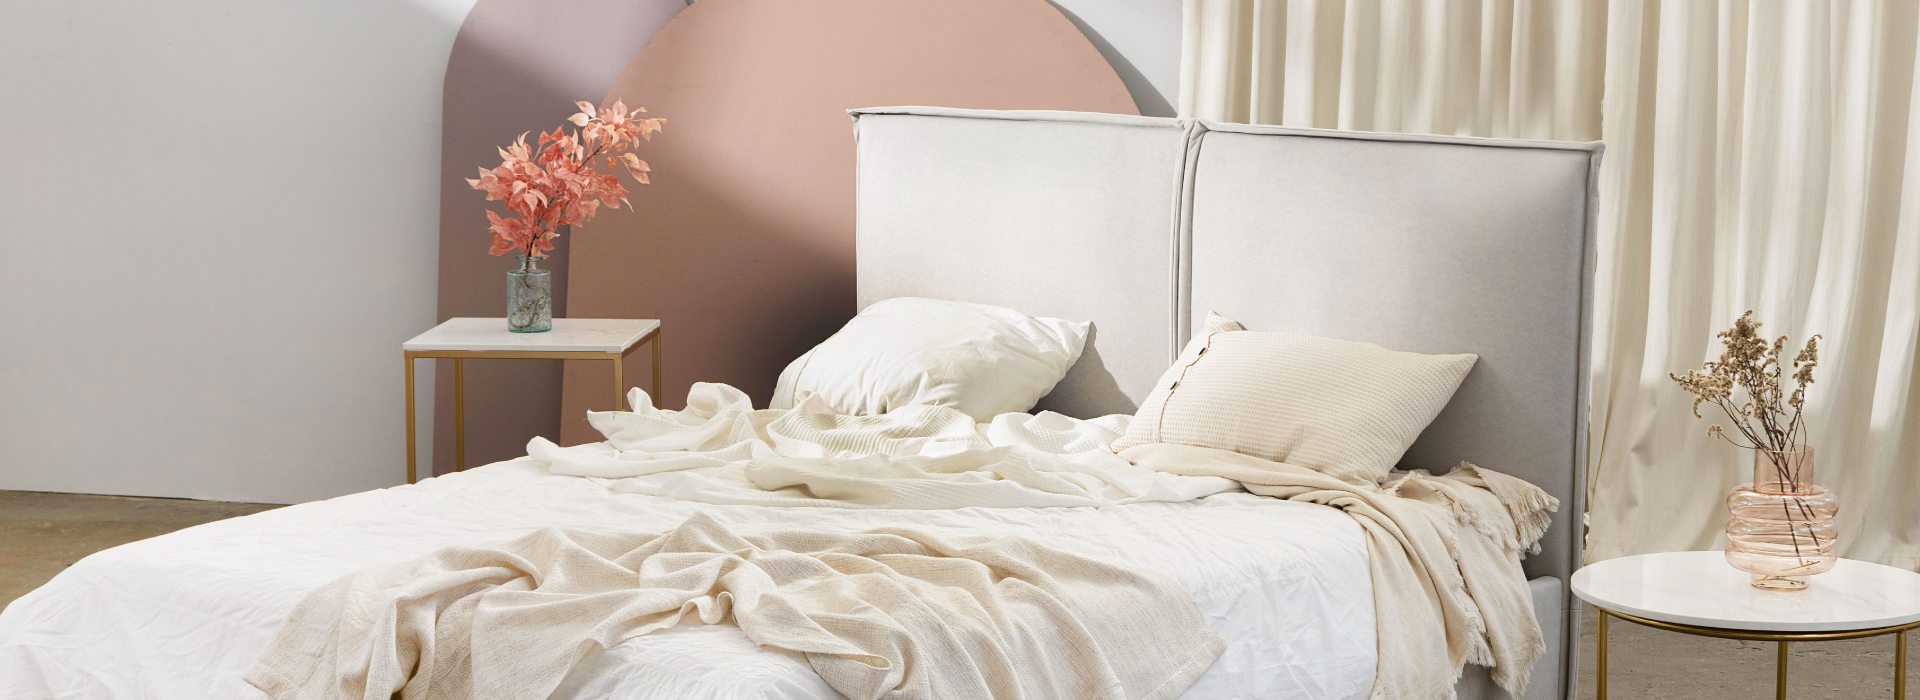 Welurowe łóżko o prostej formie w kolorze jasnoszarym. Na łóżku beżowo-biała pościel, po obu stronach łóżka stoliki kawowe.